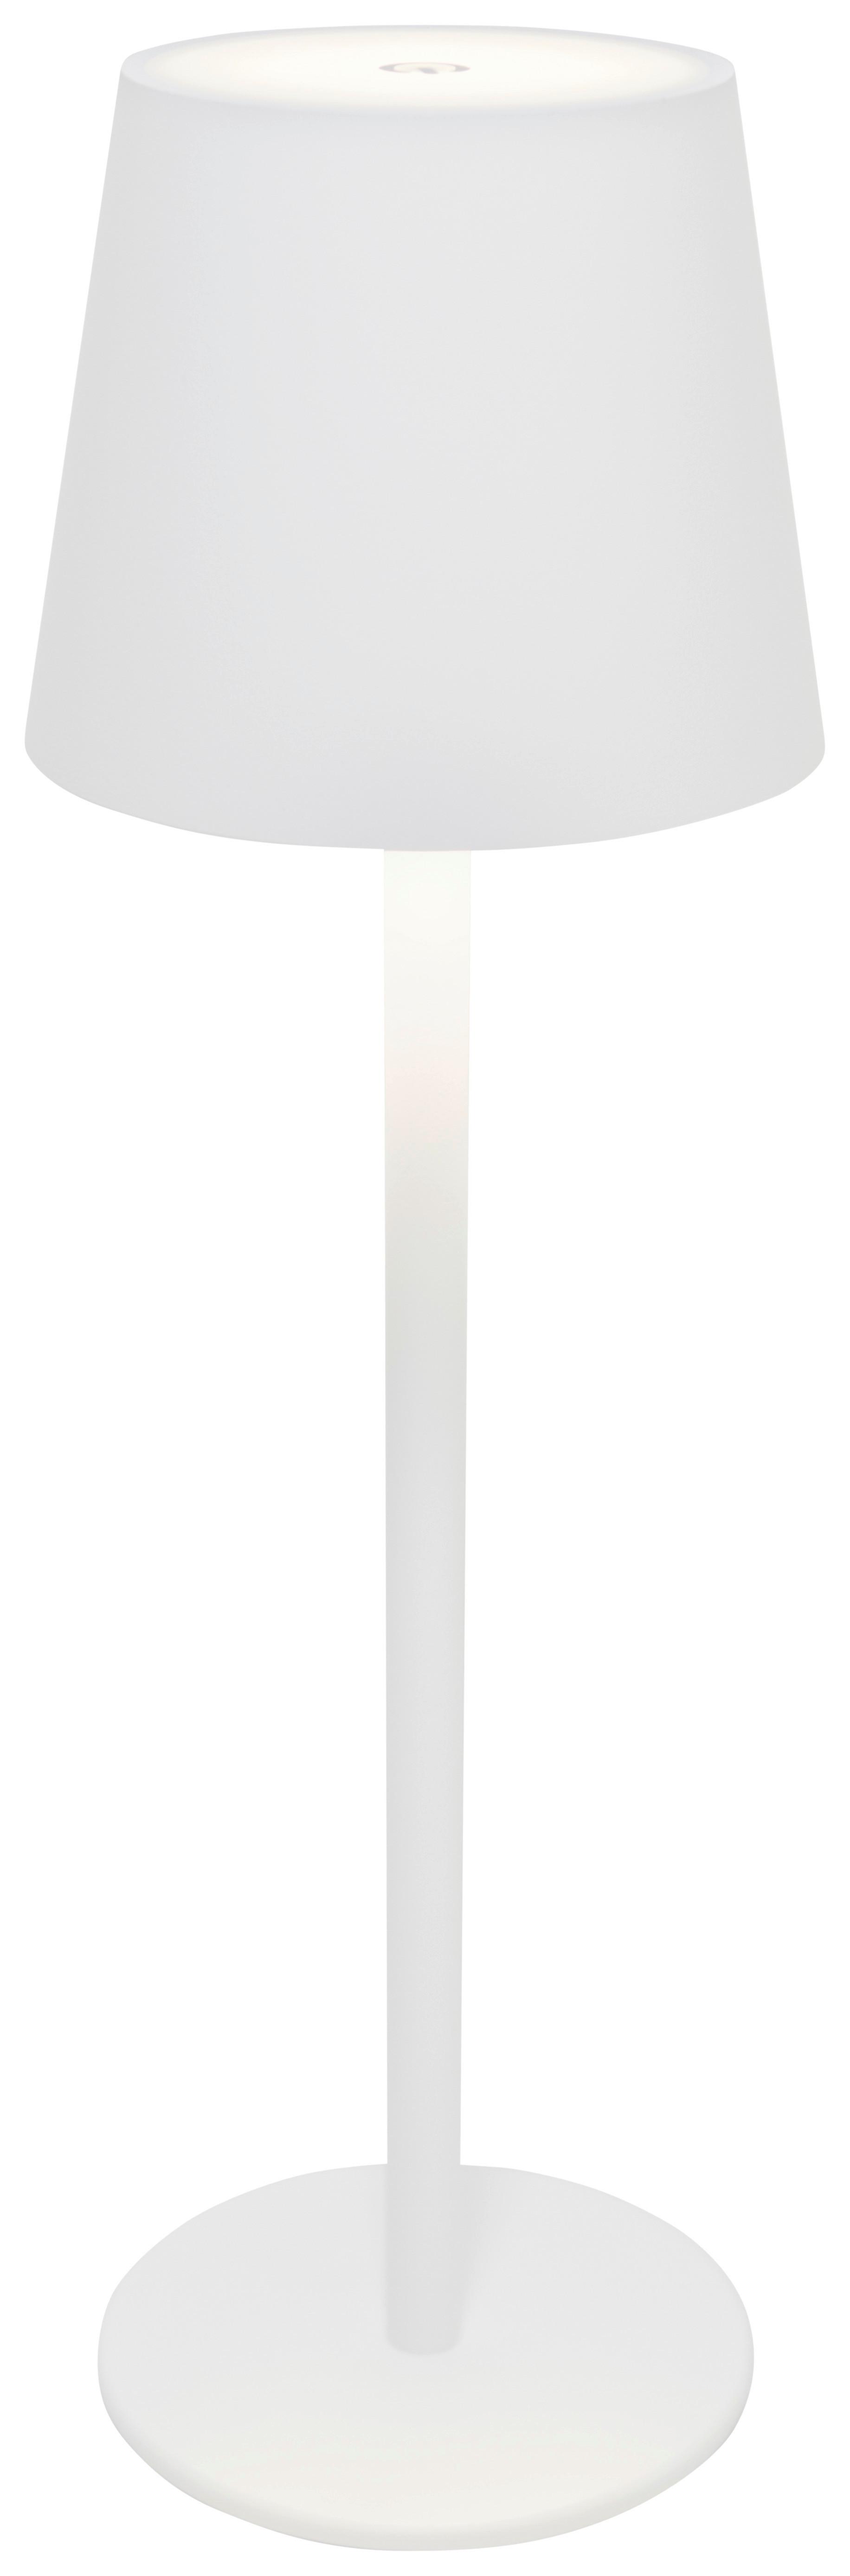 LED-Tischleuchte Noemi in Weiß max. 3 Watt - Weiss, Konventionell, Kunststoff/Metall (11,5/36cm) - Modern Living